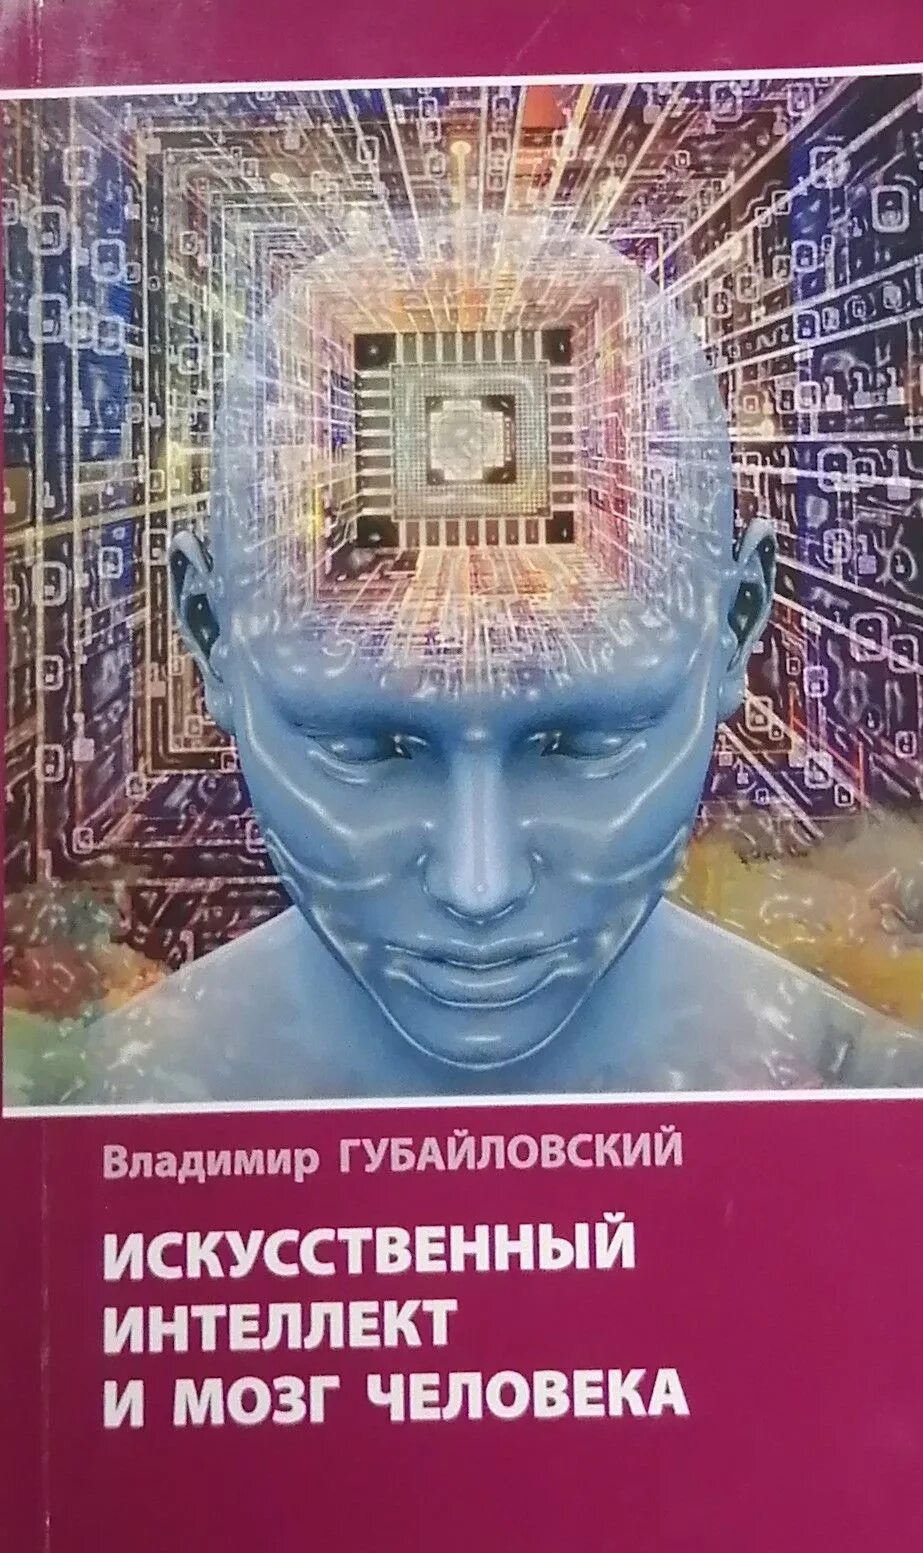 Искусственный интеллект и человеческий мозг. Книга искусственный интеллект. Искусственный интеллект мозг. Книга искусственный интеллект ИИ.